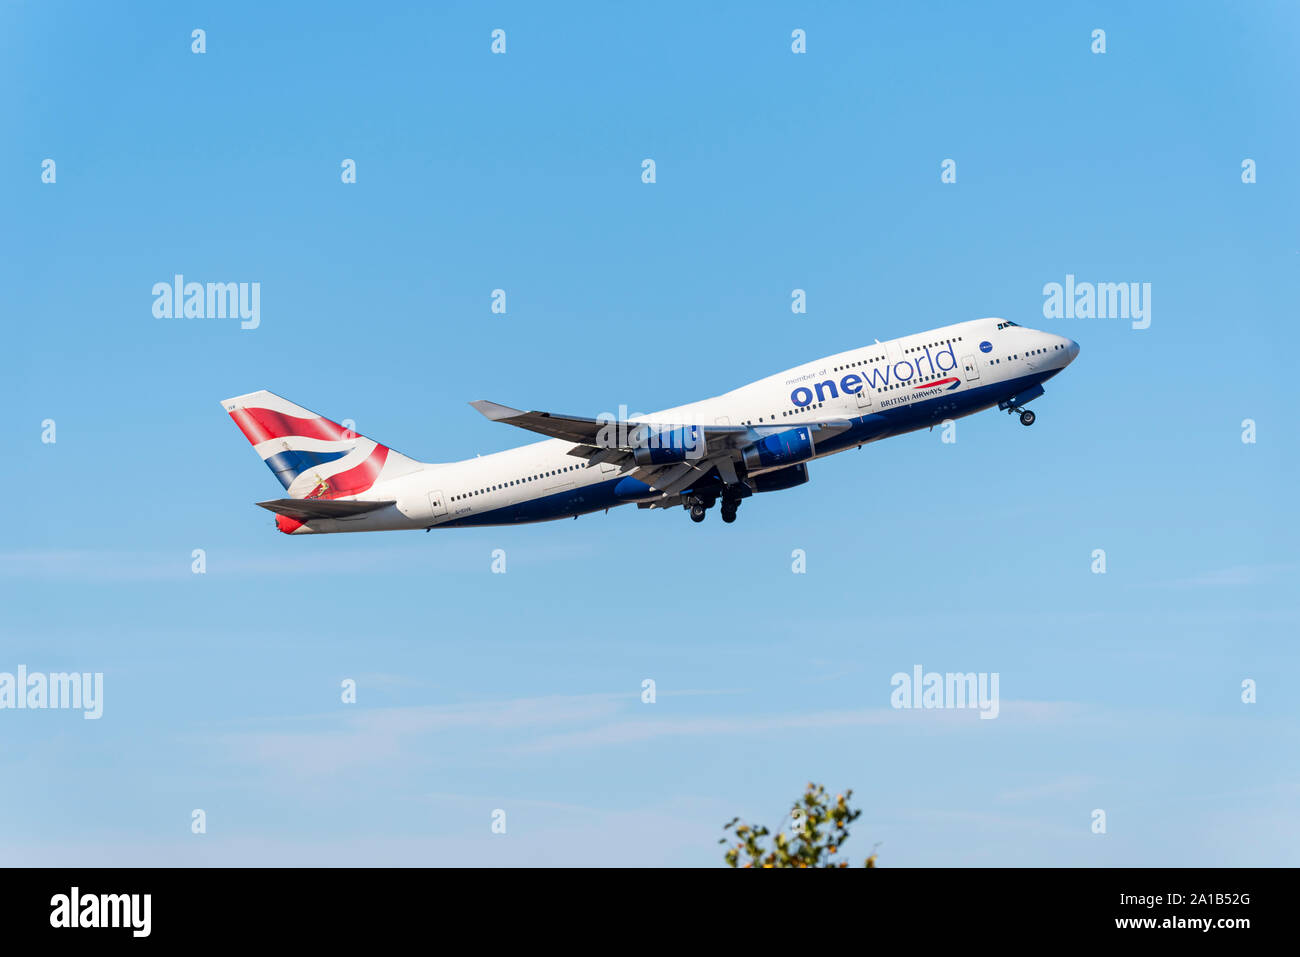 British Airways One World Boeing 747 Jumbo aereo di linea G-CIVK decolla dall'aeroporto di Londra Heathrow, Londra, Regno Unito in cielo blu Foto Stock